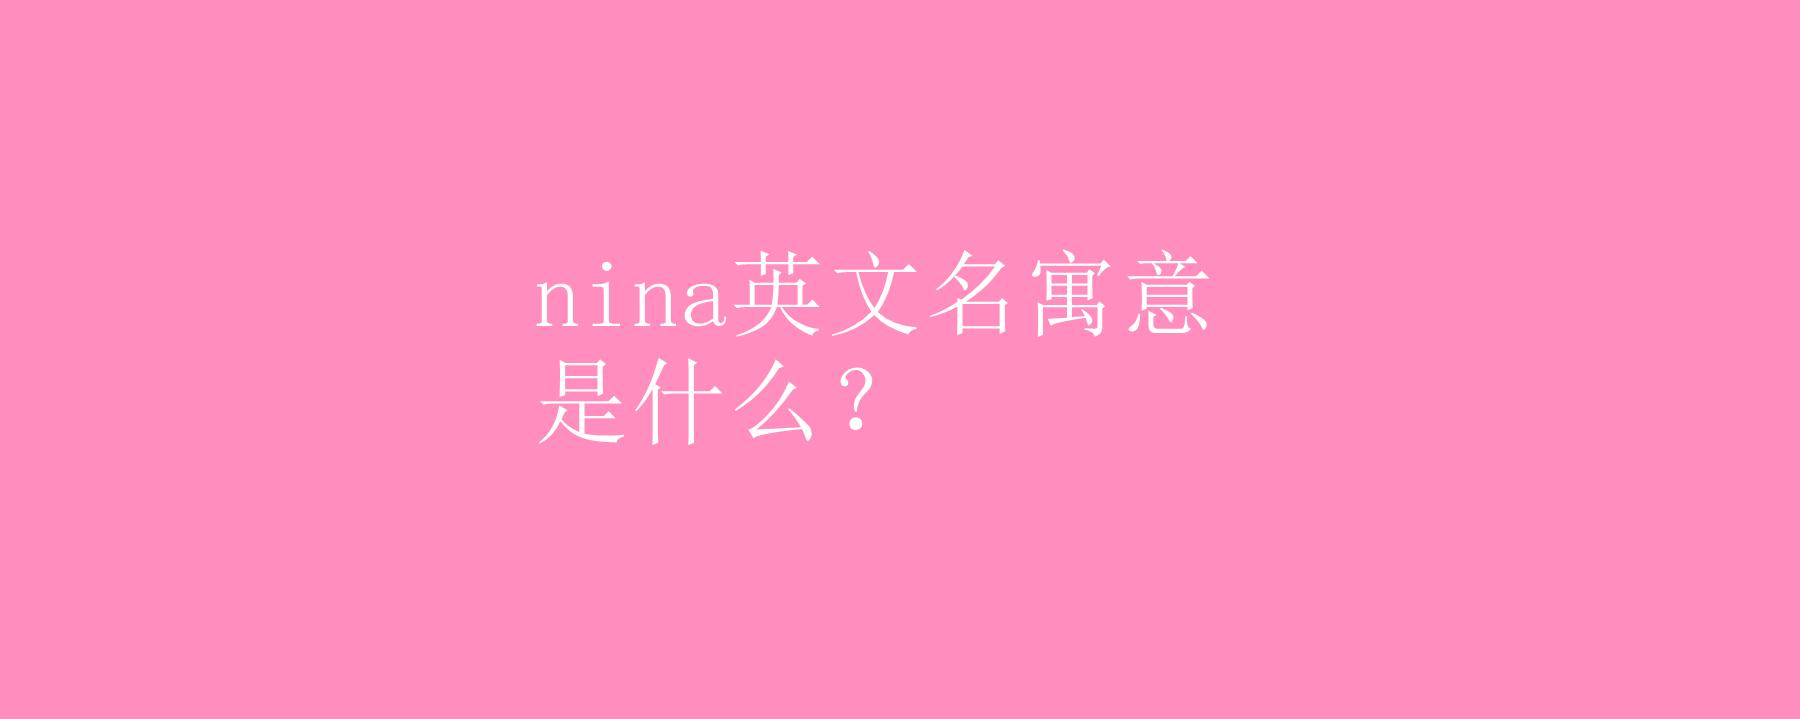 “Nina”是什么意思？（nina英文名含义）-图1